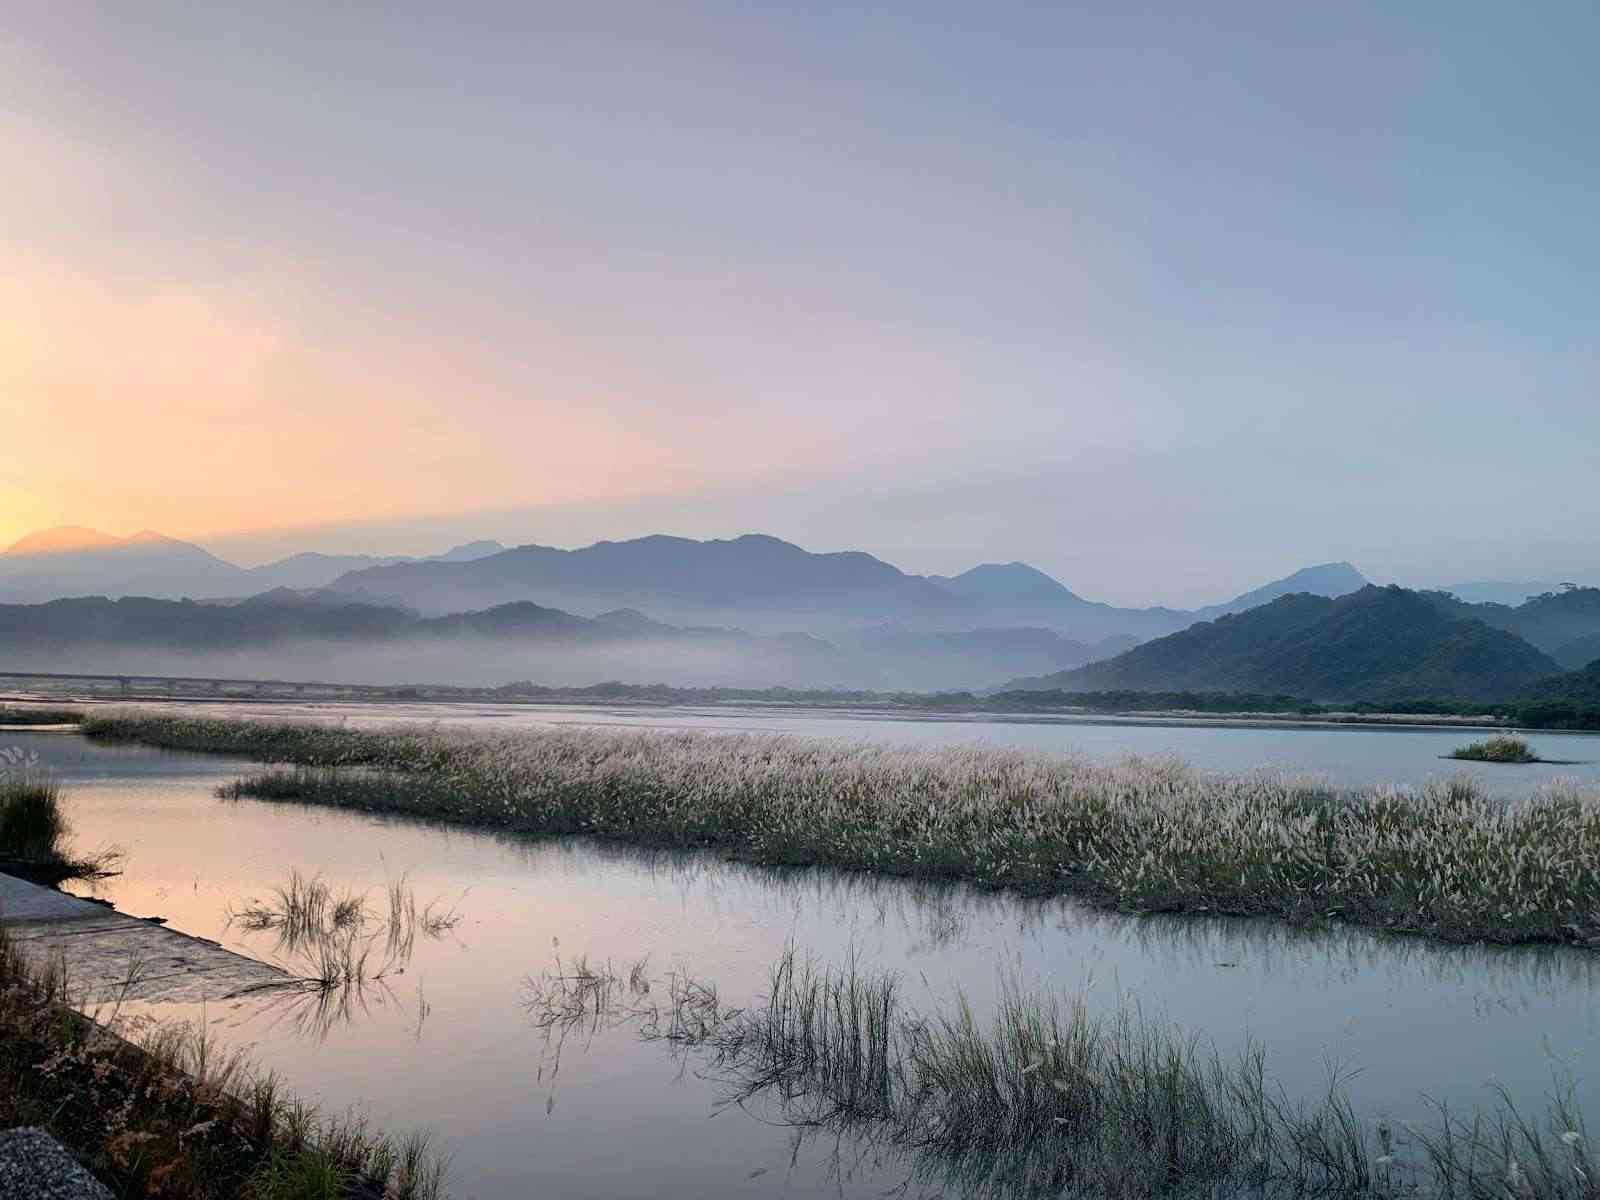 集集攔河堰/ 攝影者: Ian Chi

(由第三方資訊提供)